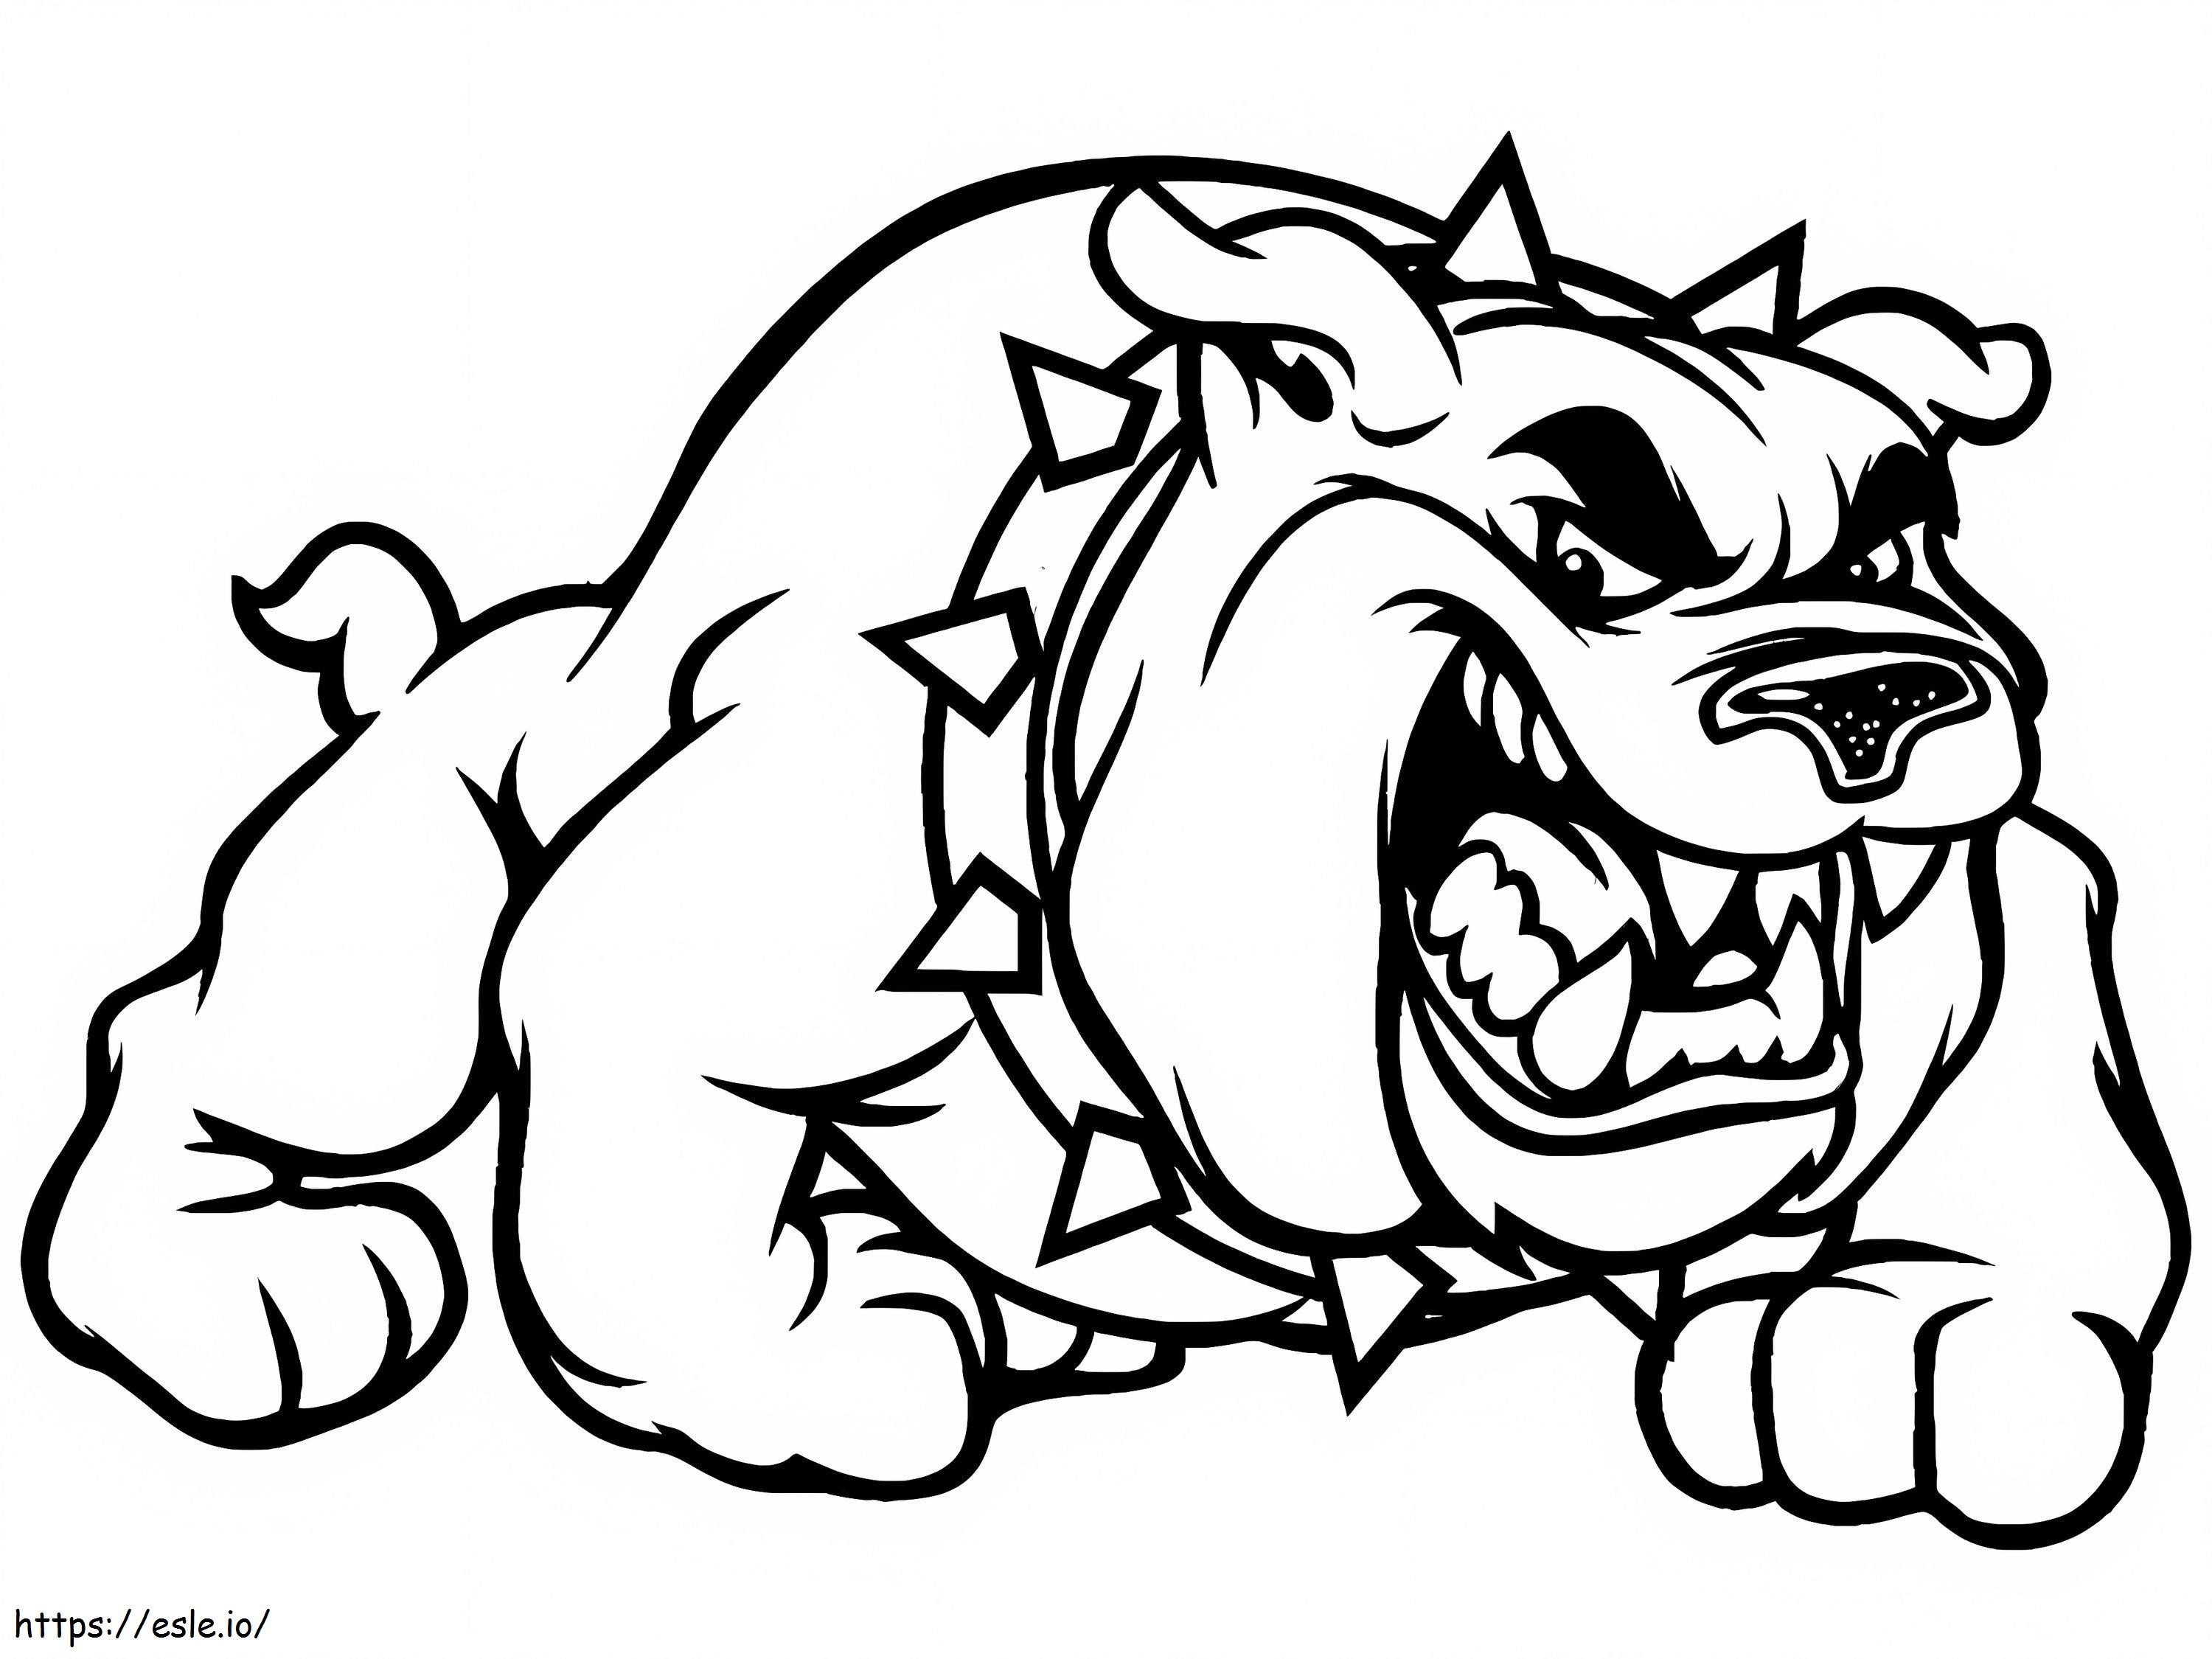 Wütende Bulldogge ausmalbilder